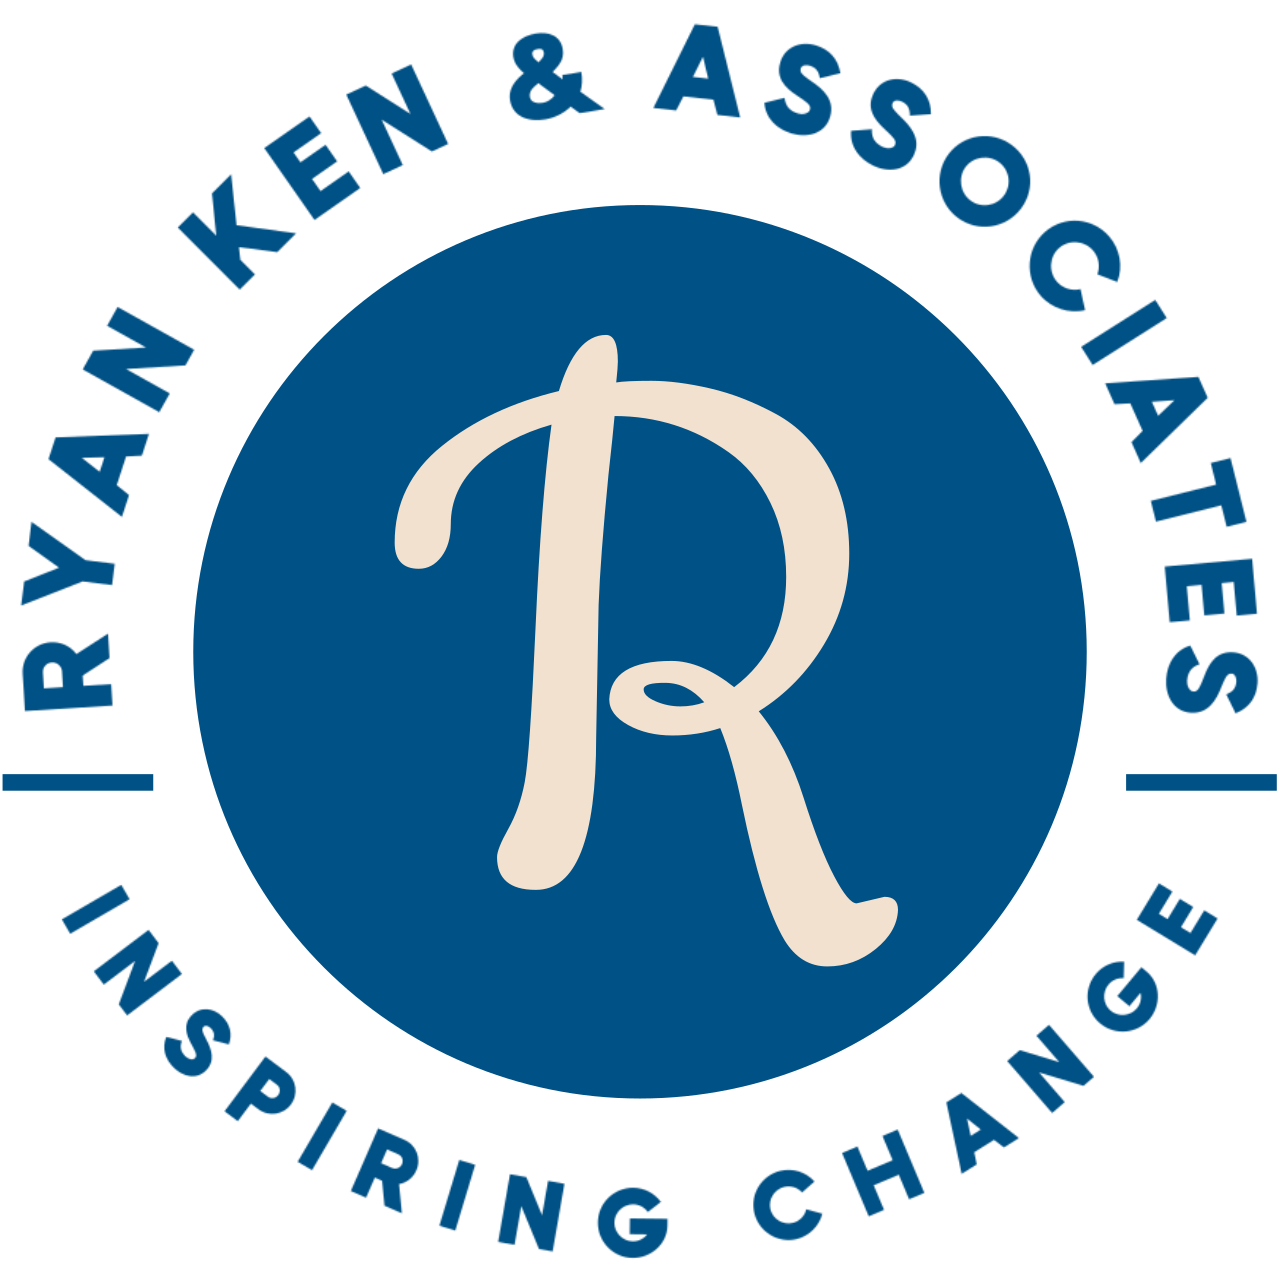 Ryan Ken & Associates's web page